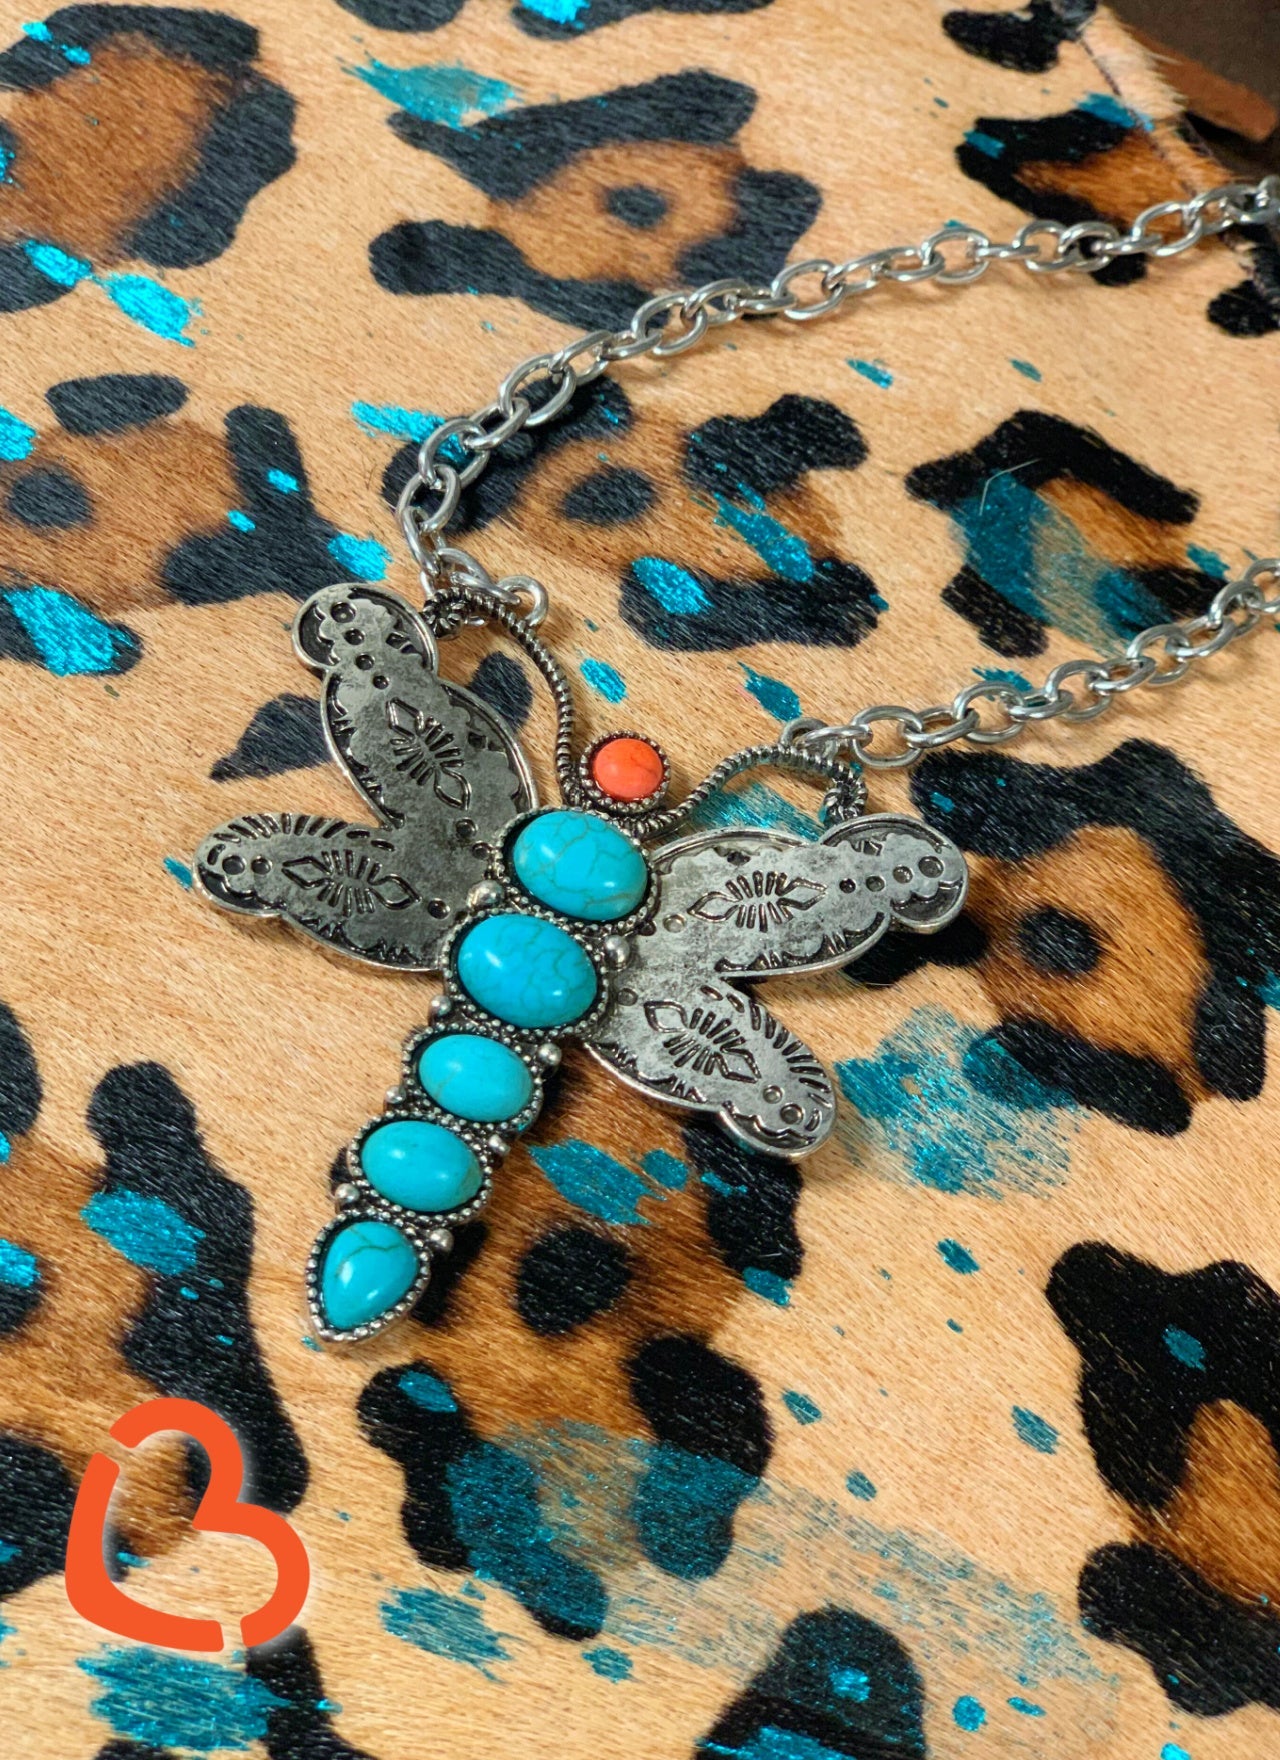 Take Flight Dragonfly Necklace Jewelry 19 